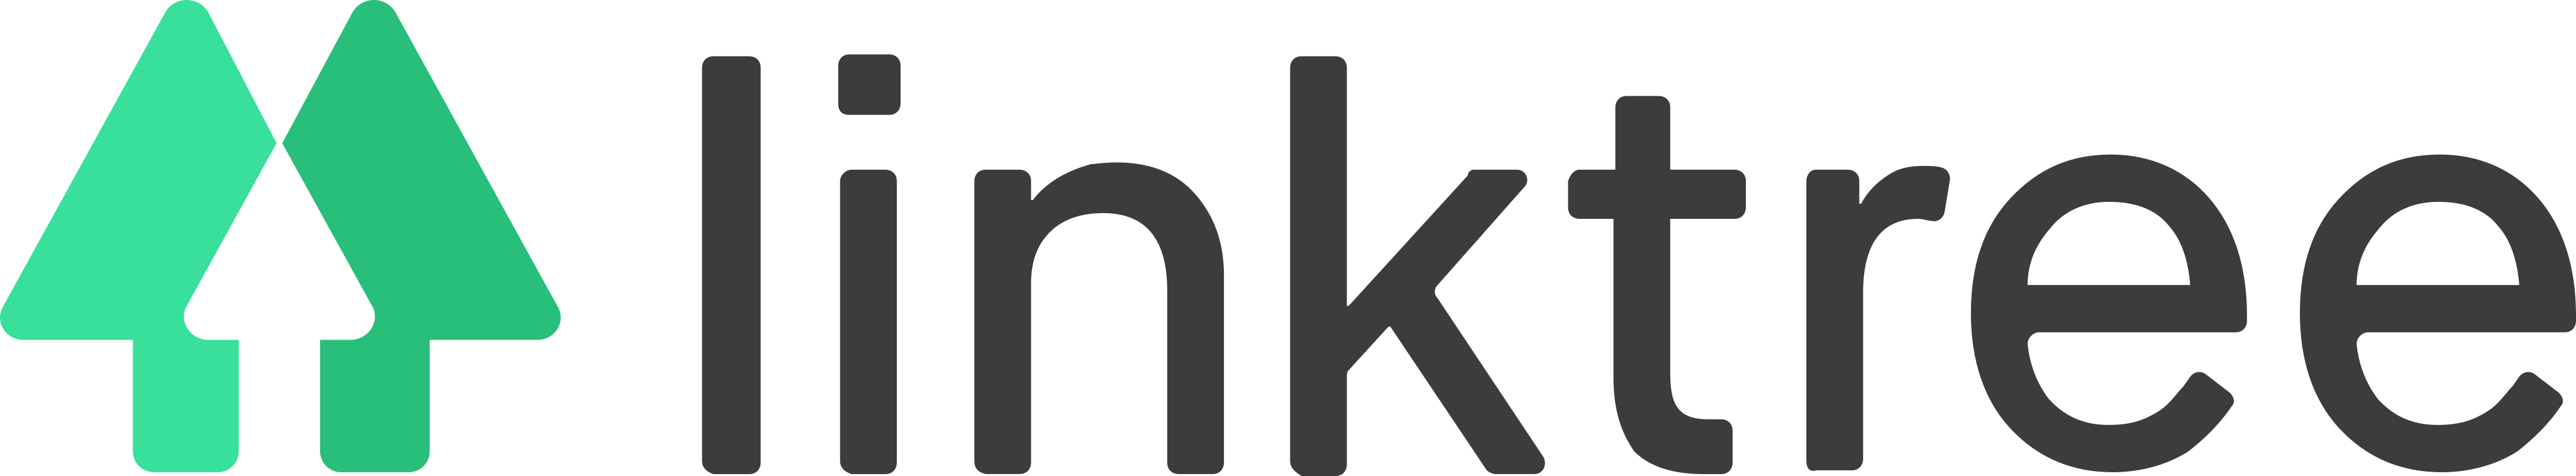 linktree logo - Linktree Logo